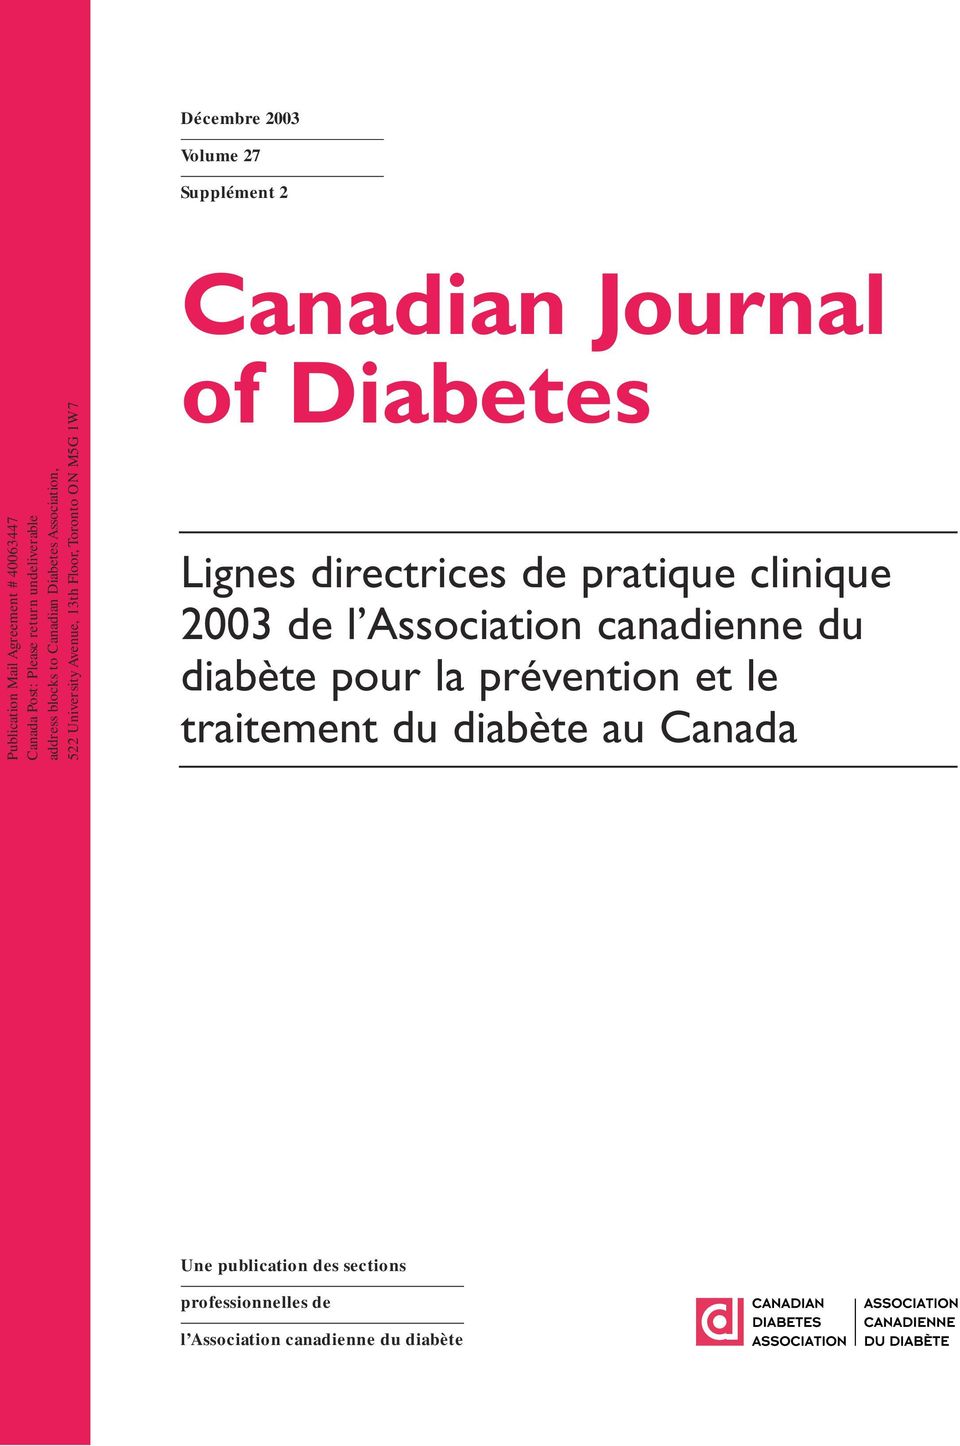 Journal of Diabetes Lignes directrices de pratique clinique 2003 de l Association canadienne du diabète pour la